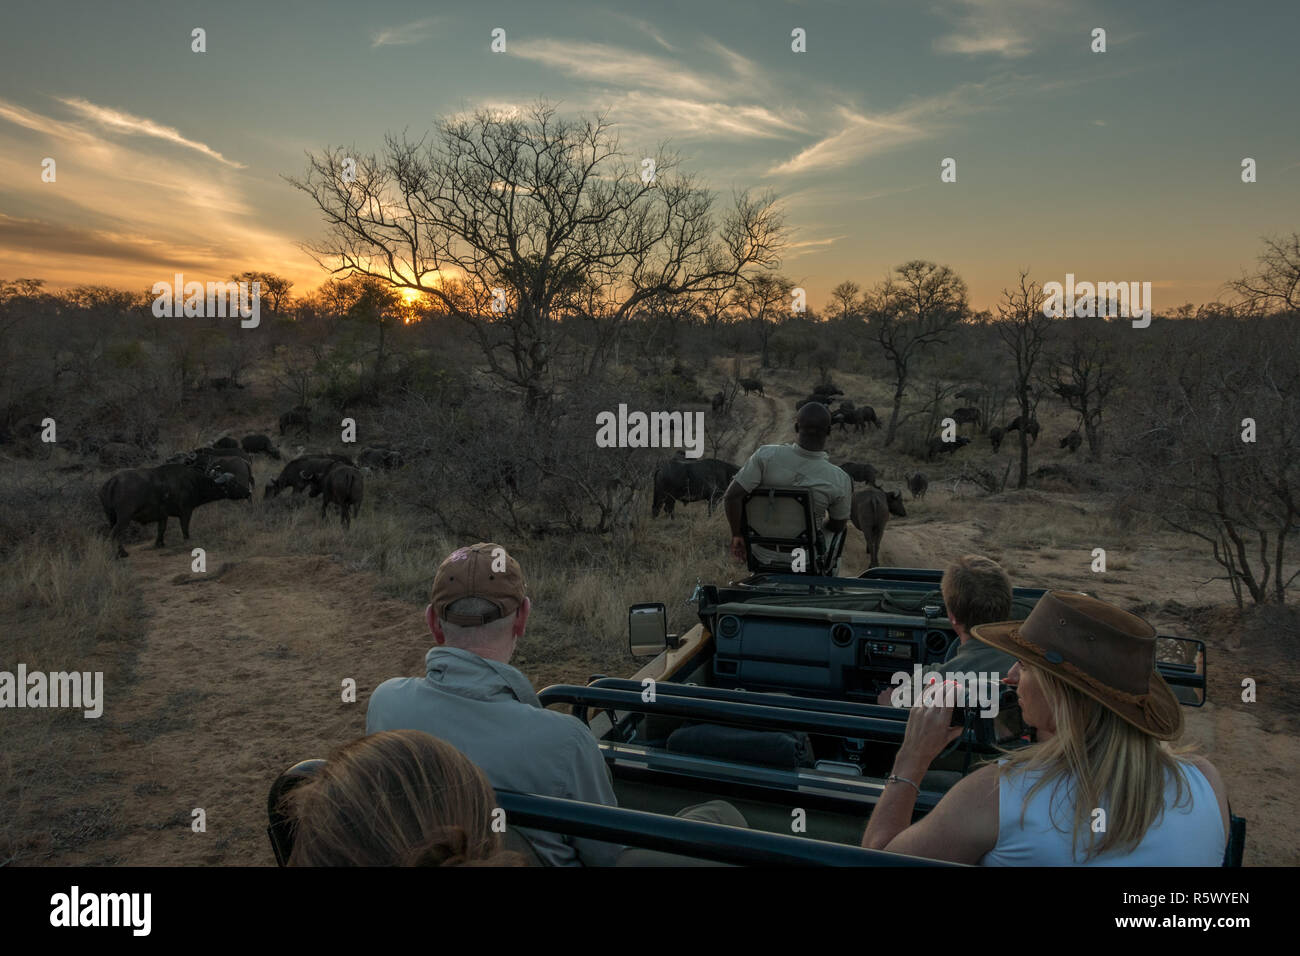 Los turistas de safari en un jeep ver una manada de búfalos al atardecer en la sabana arbolada del mayor parque nacional de Kruger, Sudáfrica Foto de stock